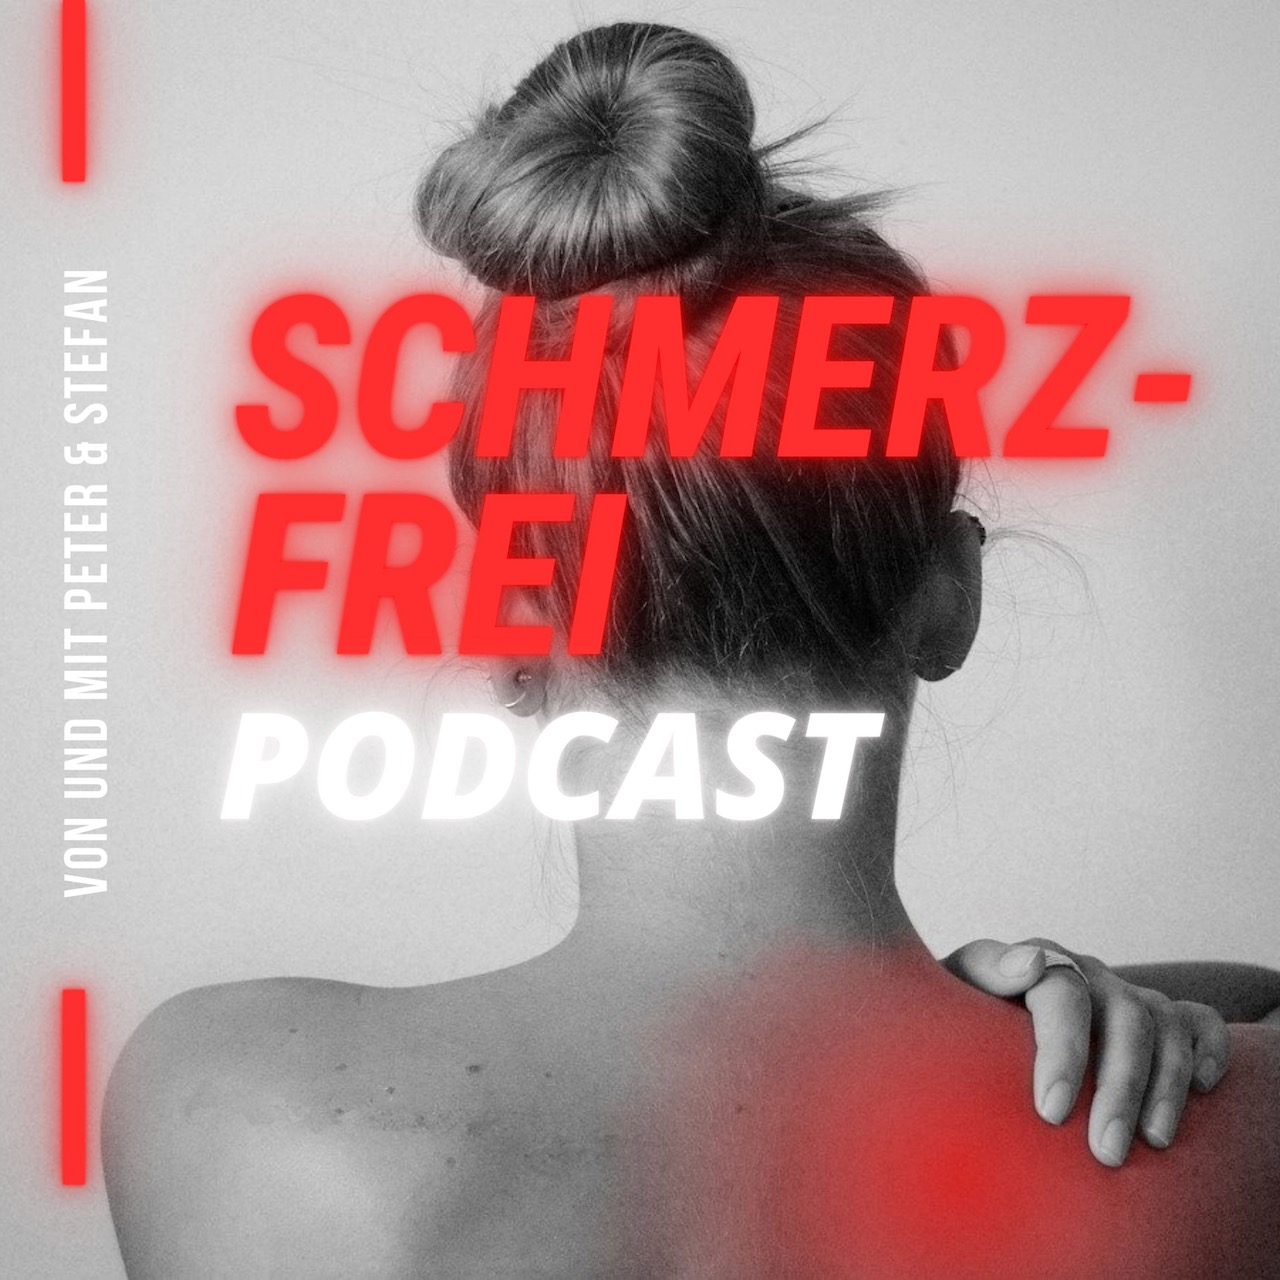 Podcast Episode 148 – Schmerzfrei-Podcast